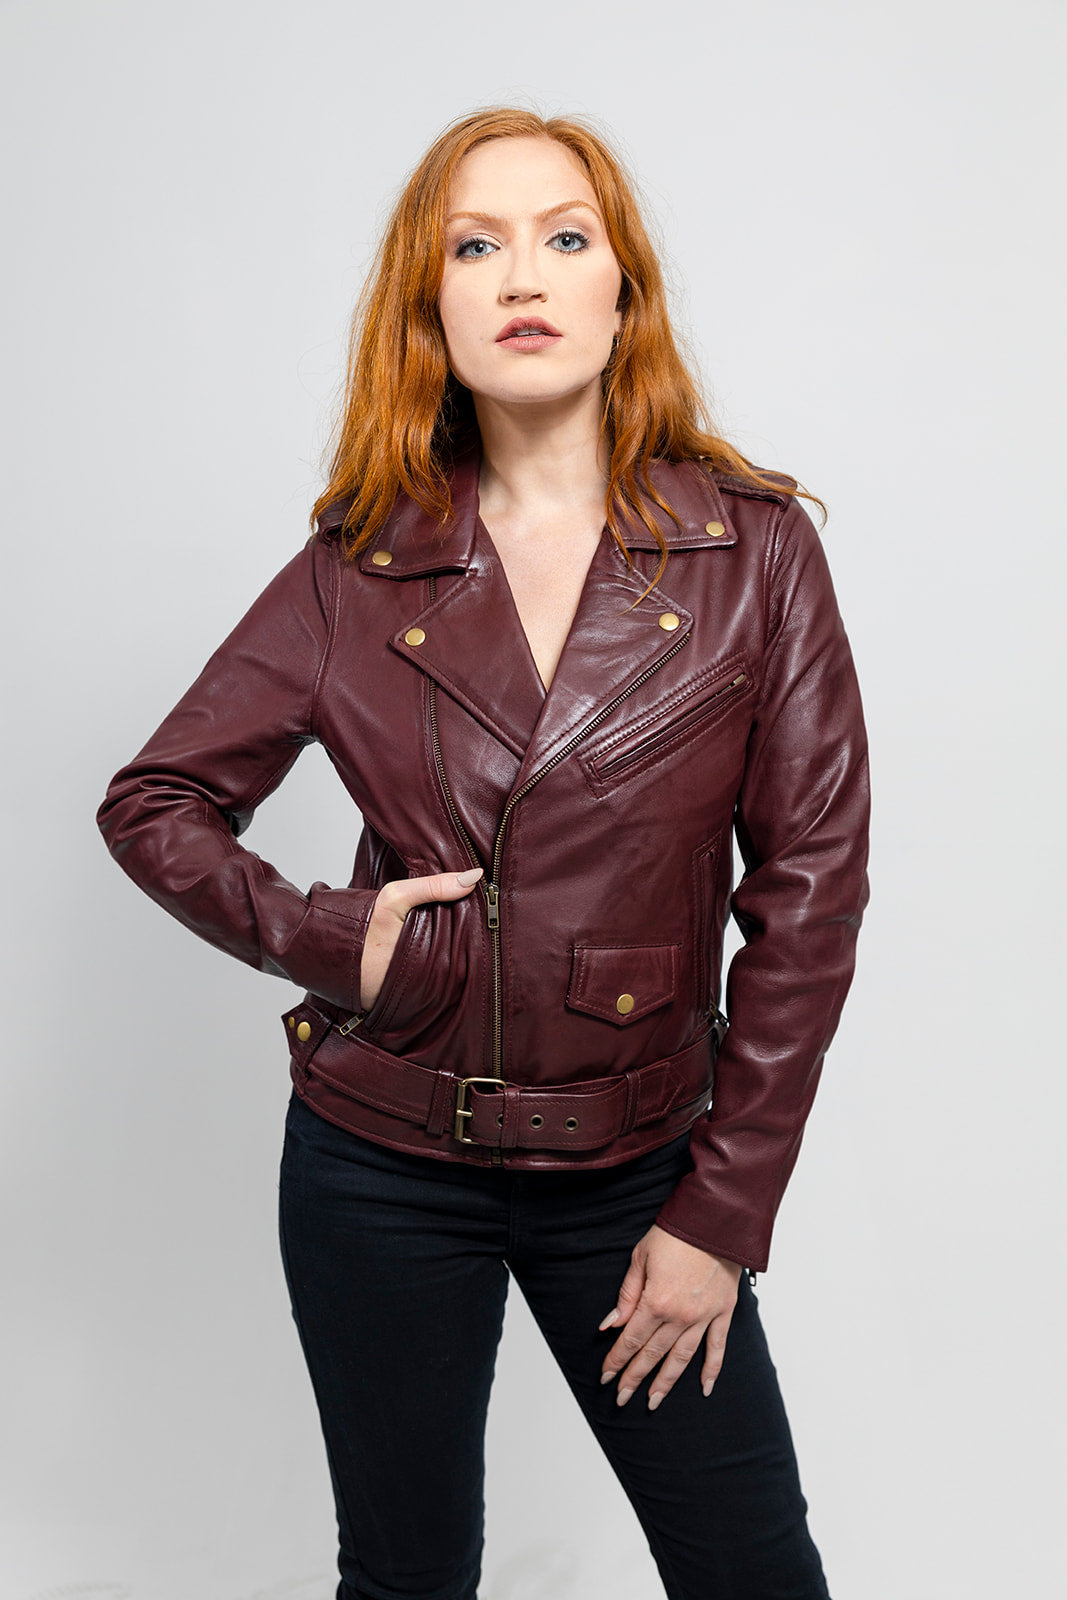 Rebel - Women's Fashion Lambskin Leather Jacket (Oxblood) – First